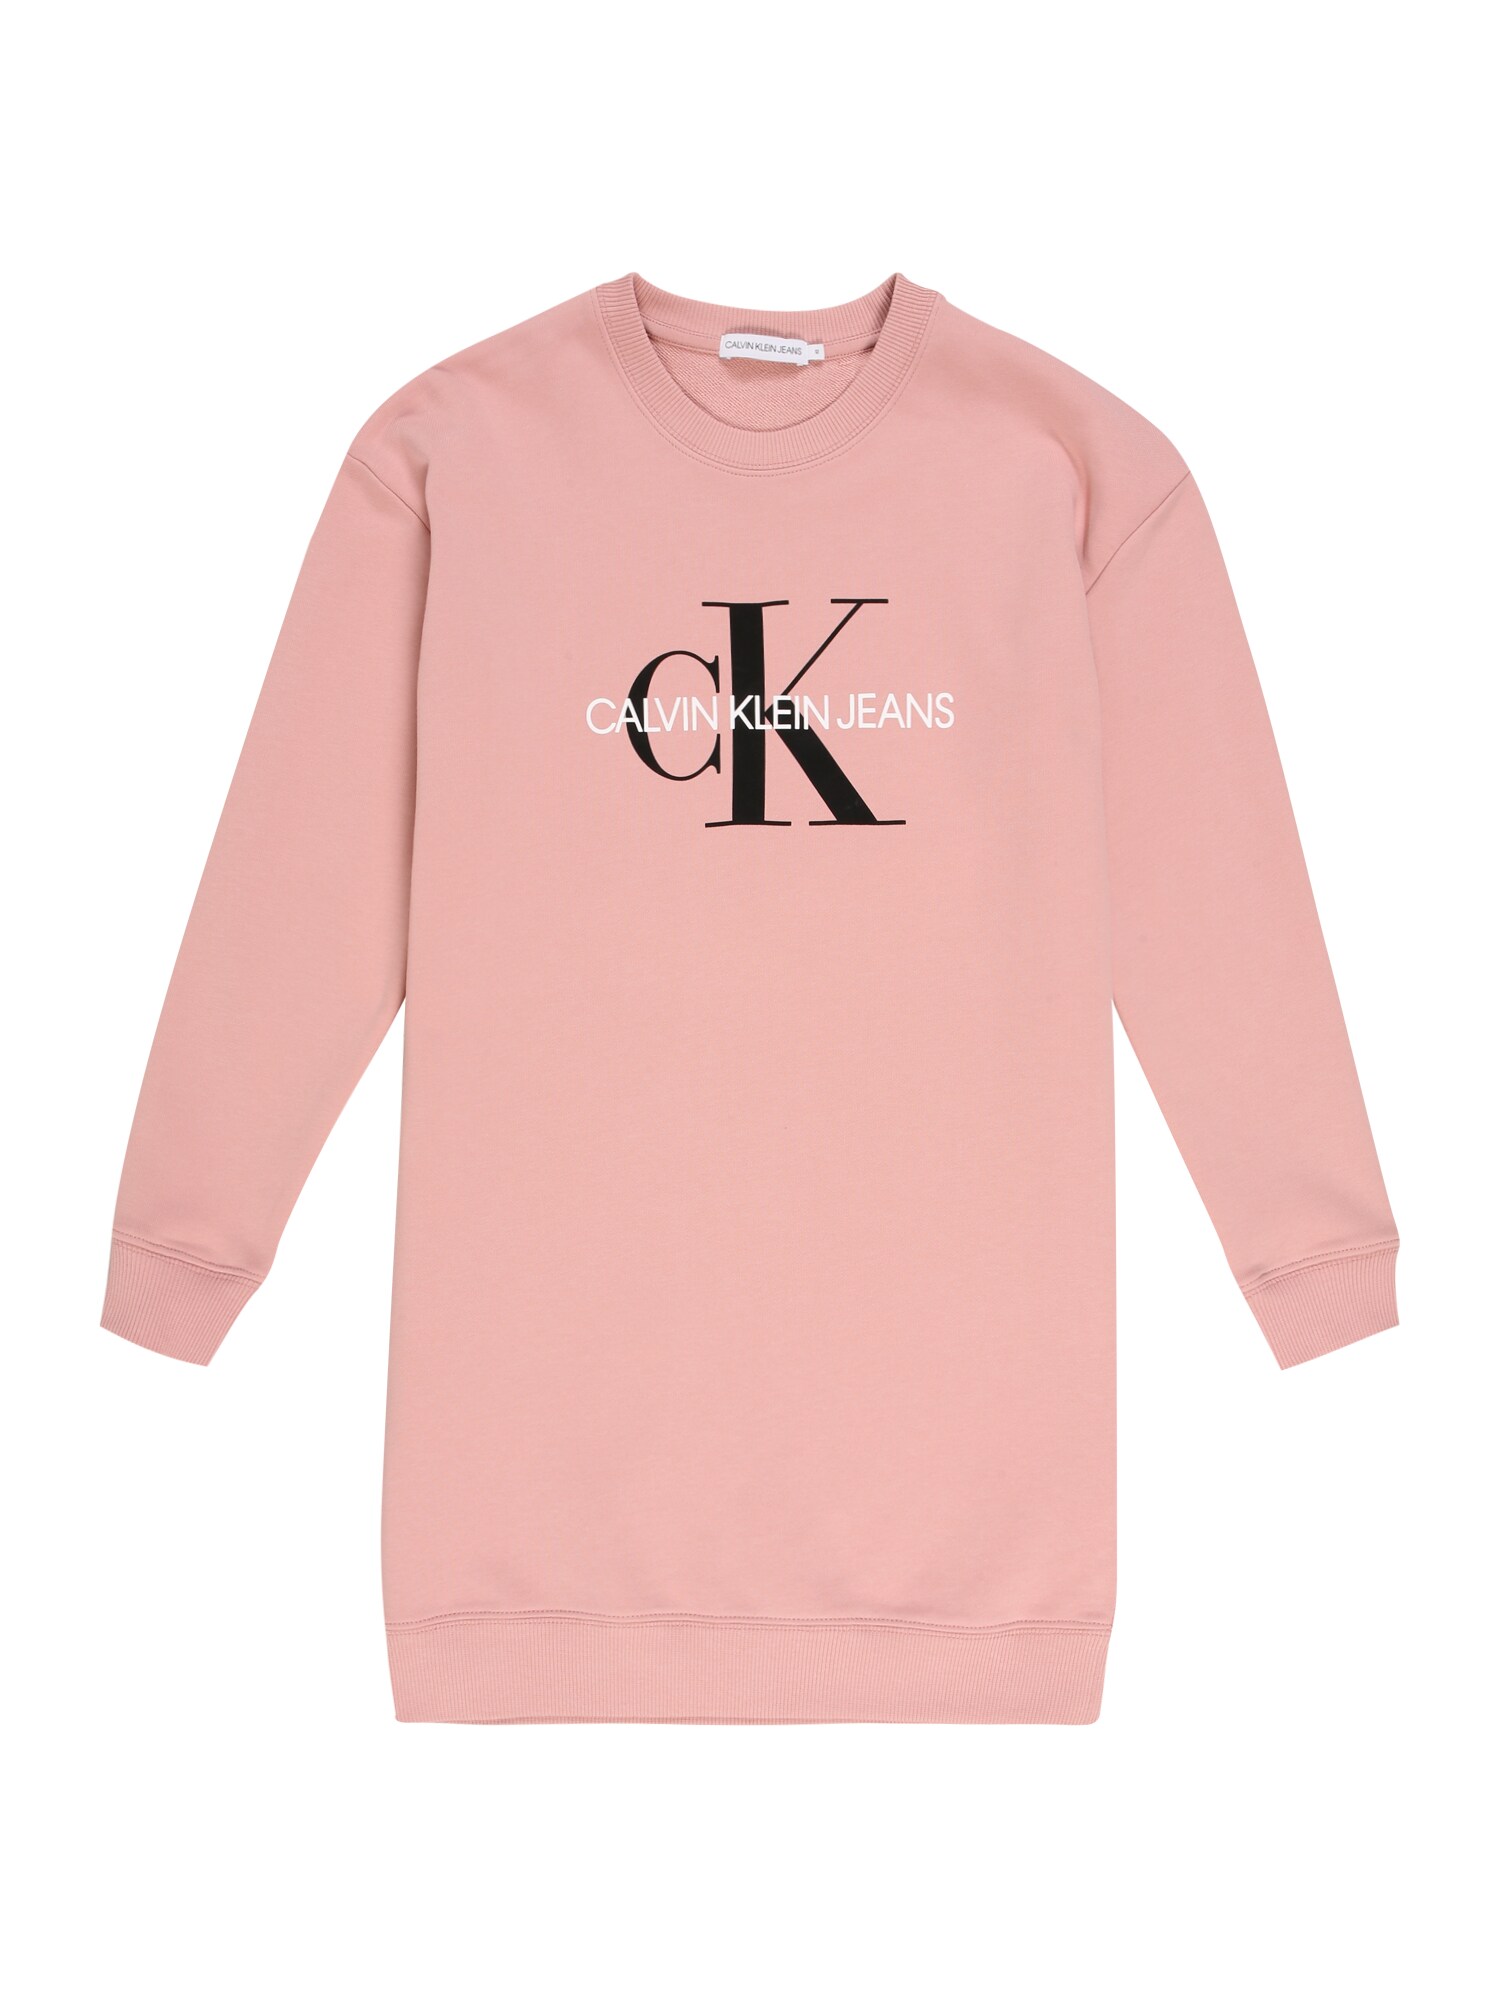 Calvin Klein Jeans Suknelė  ryškiai rožinė spalva / balta / juoda